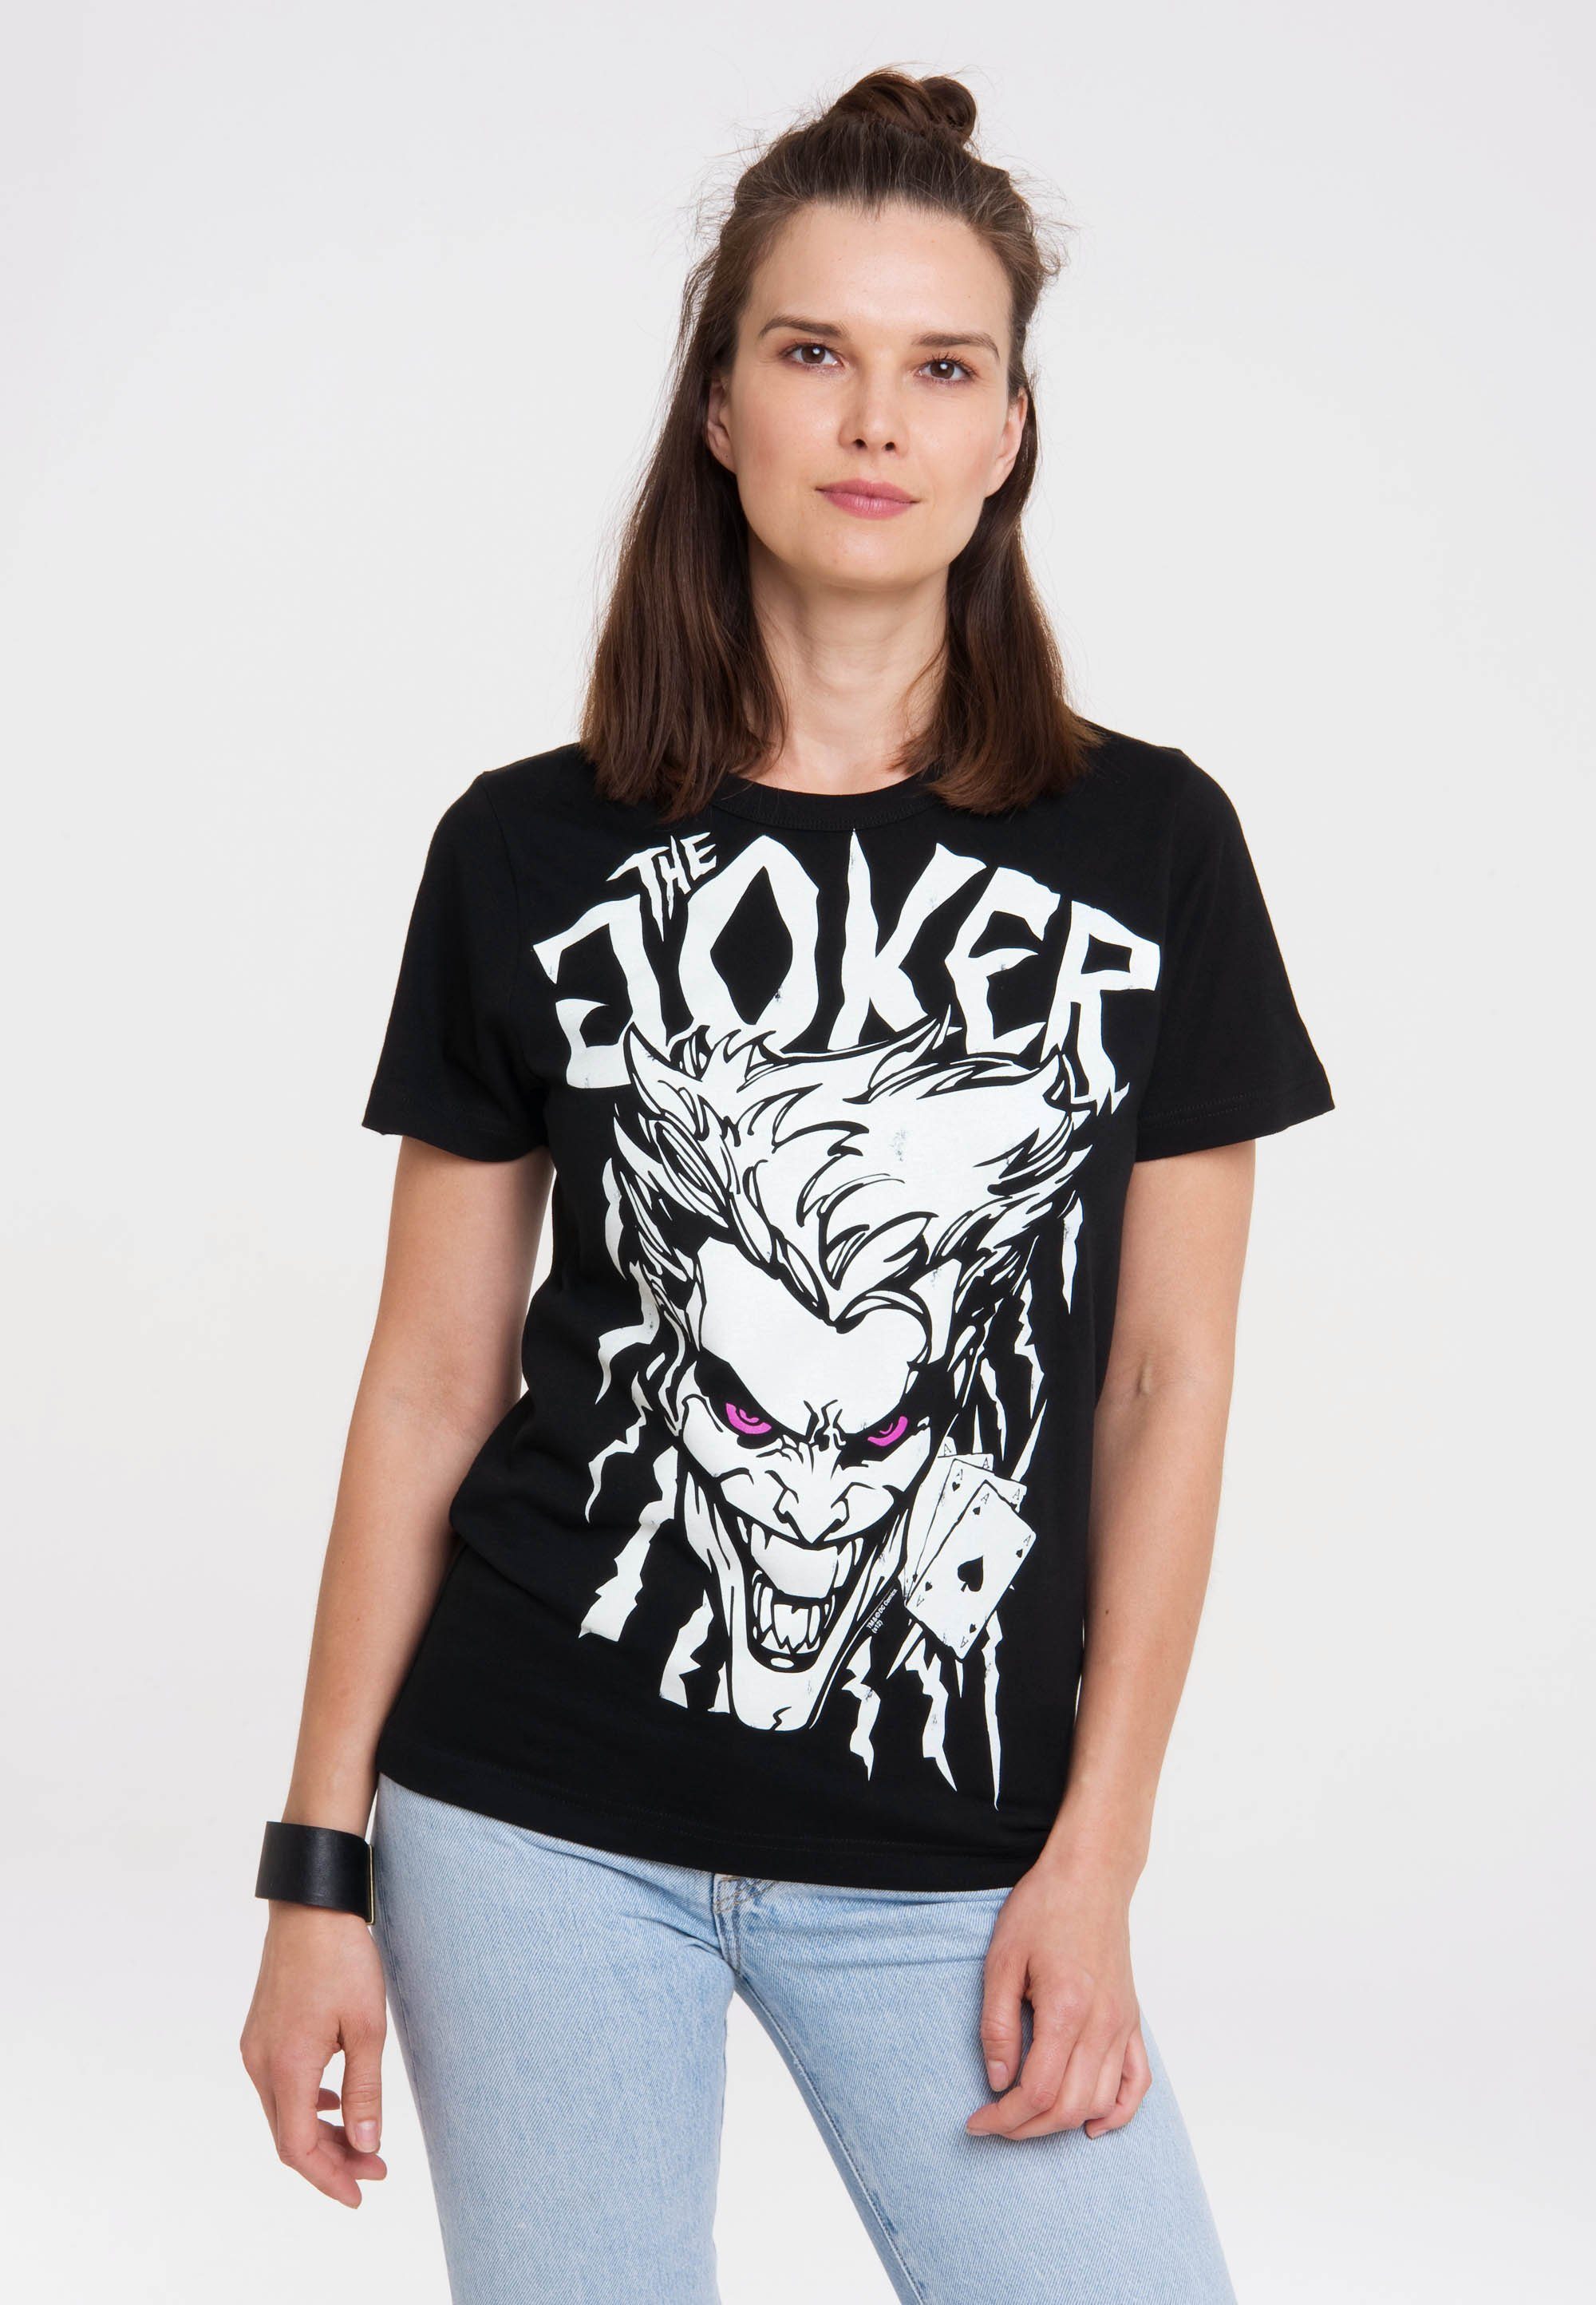 mit Joker DC Comics - T-Shirt Print LOGOSHIRT lizenziertem